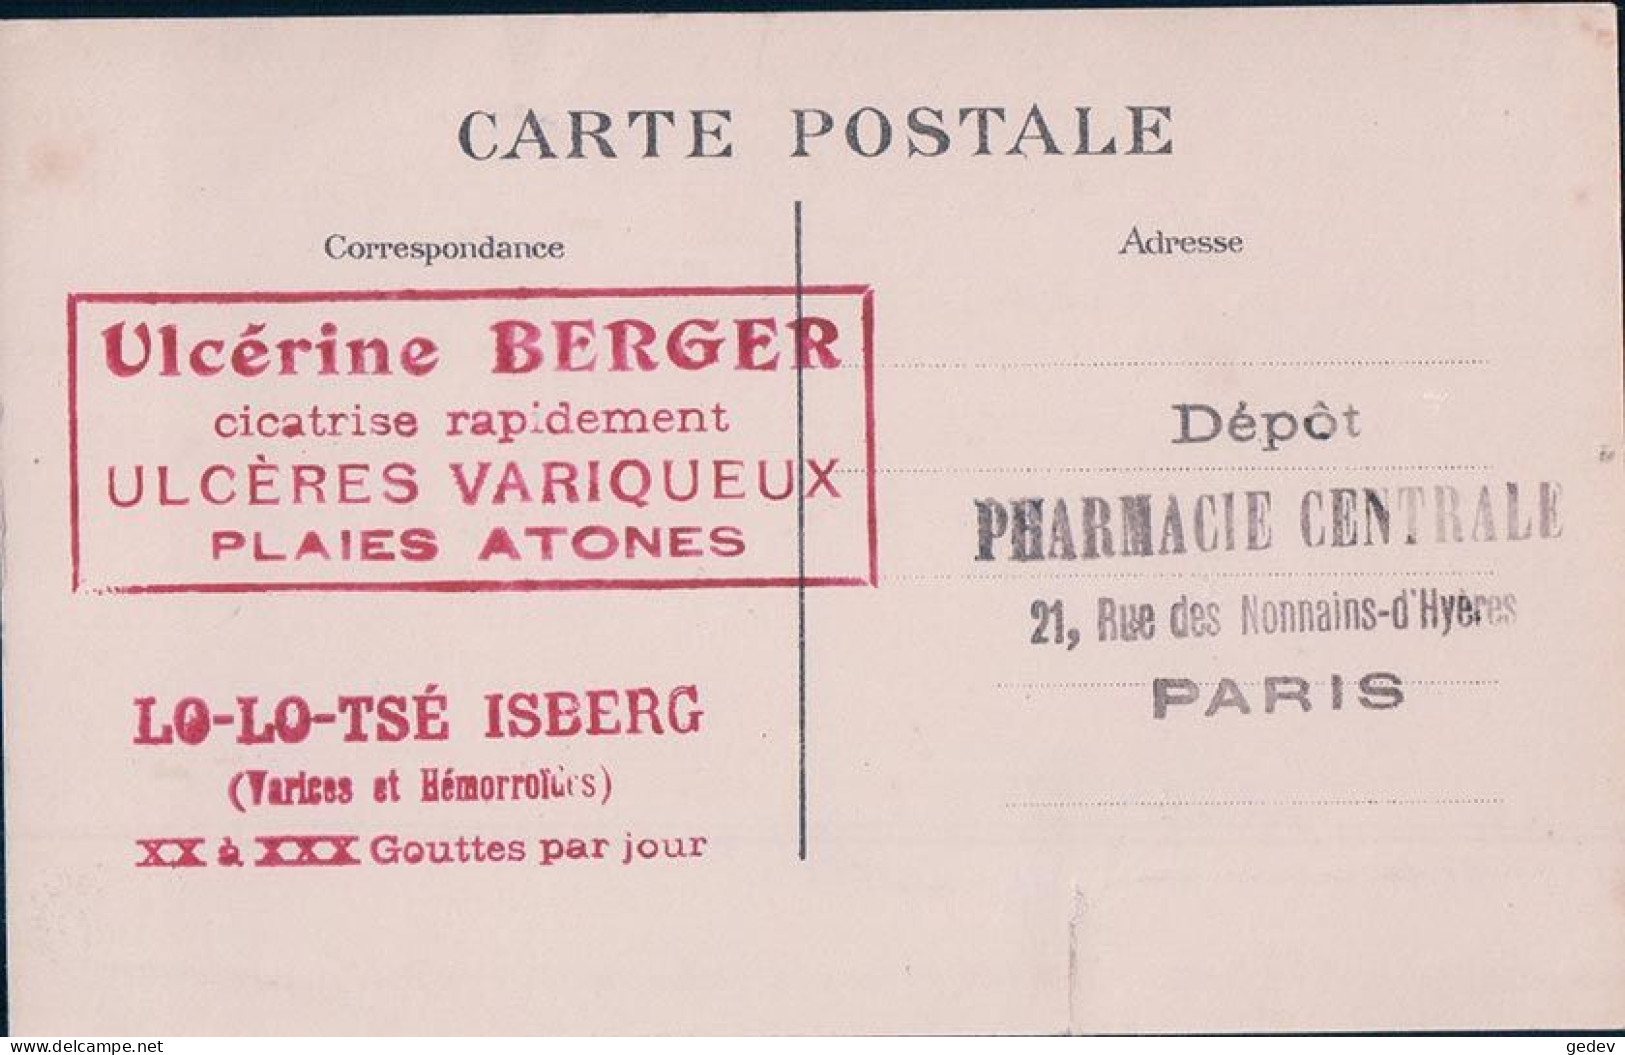 France 75, Batignolles Jardin Des Plantes, Autobus Dans La Seine, Accident Du 27.9 1911, Pub Au Dos (1911) Déchirure - De Seine En Haar Oevers